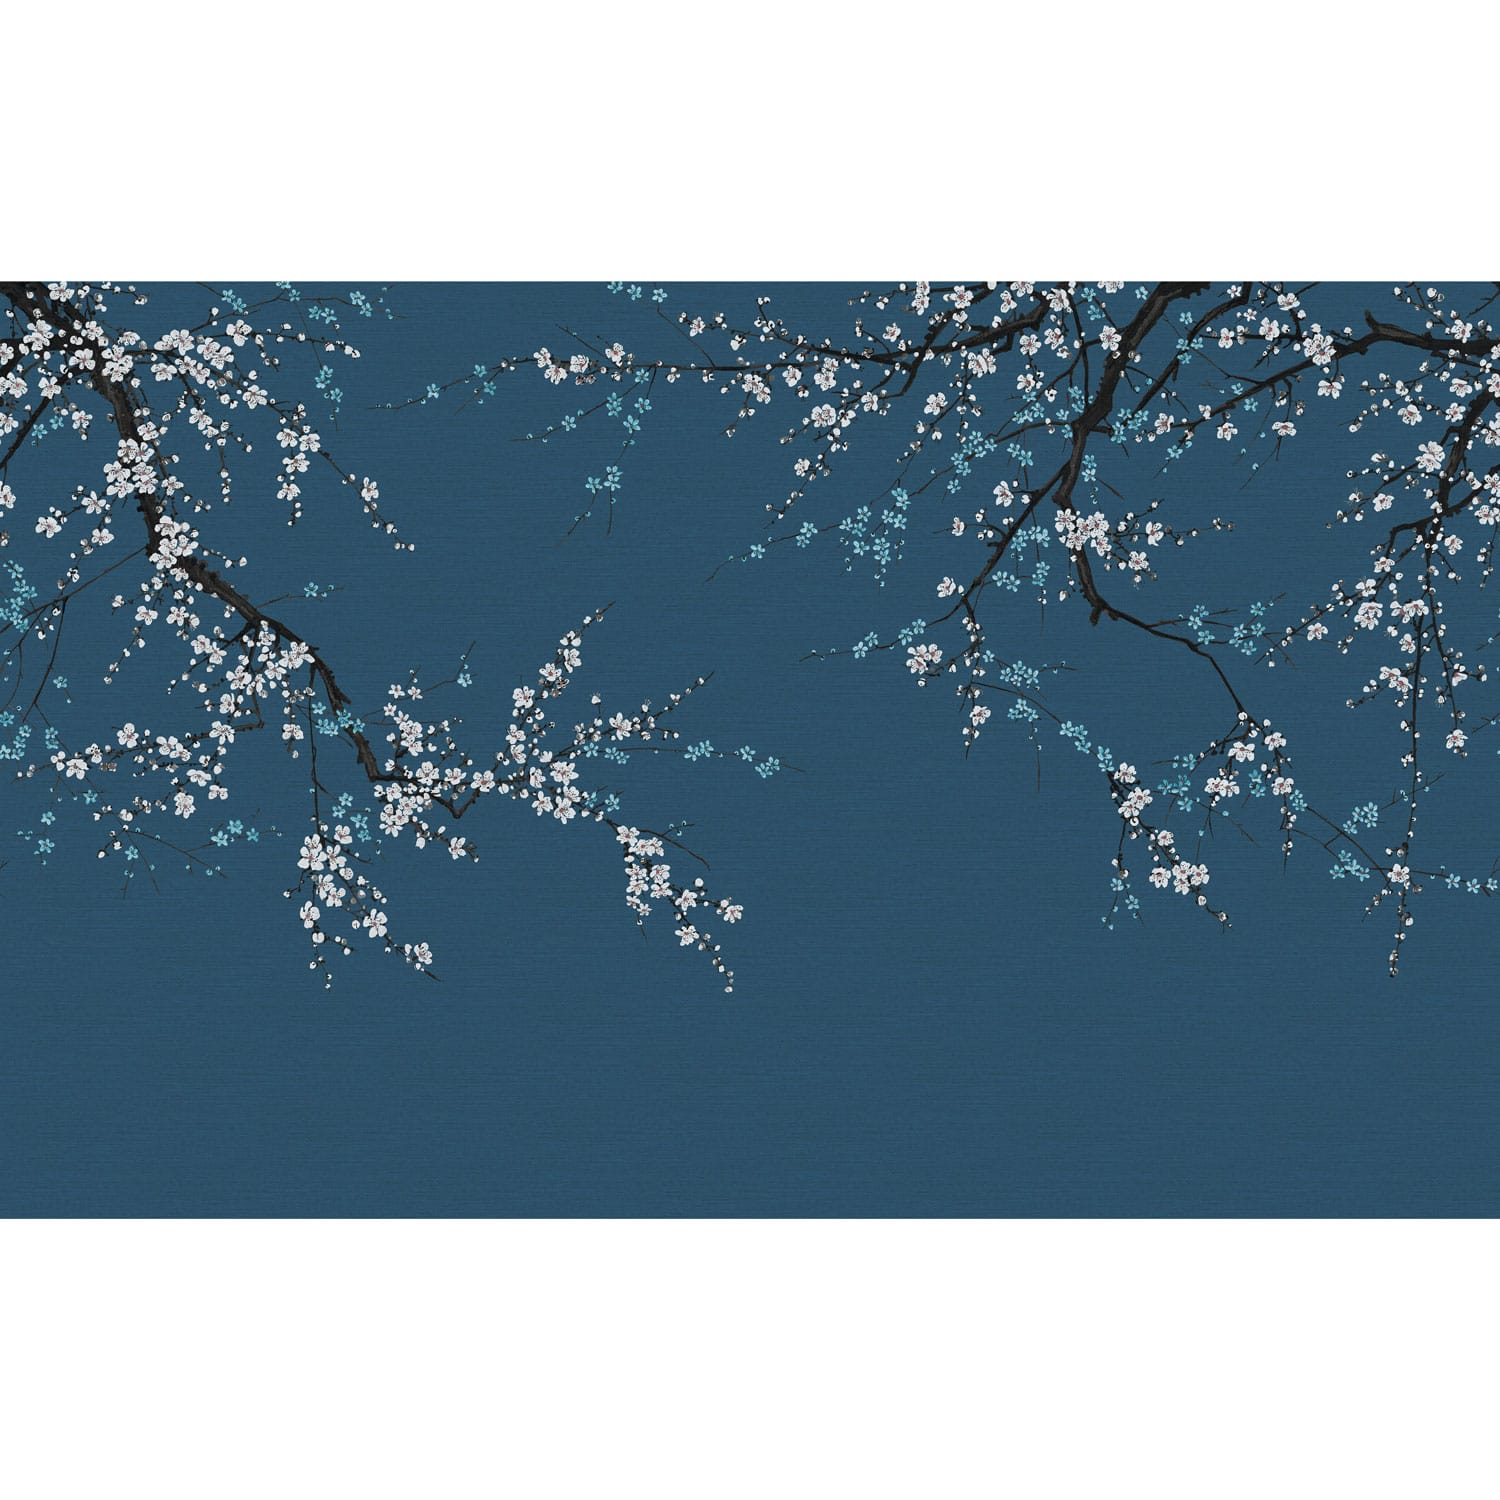 Sakura hanablauw fotobehang op maat